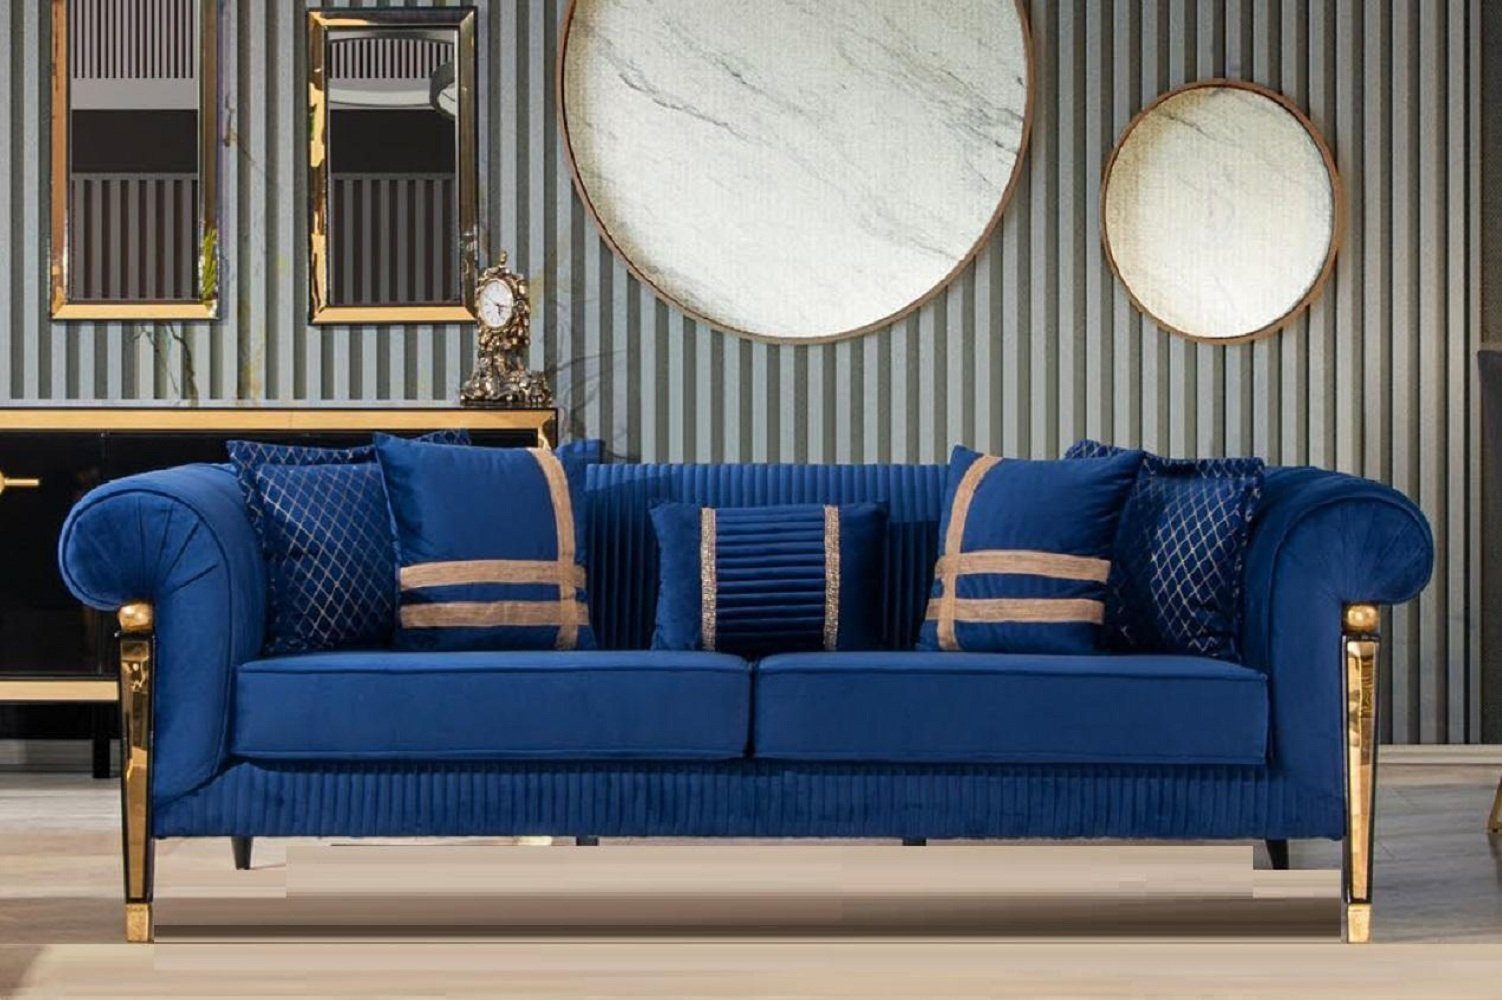 JVmoebel 3-Sitzer Blauer Dreisitzer Sofa 3-Sitzer Luxus Möbel Moderne Polstercouch Stil, 1 Teile, Made in Europa